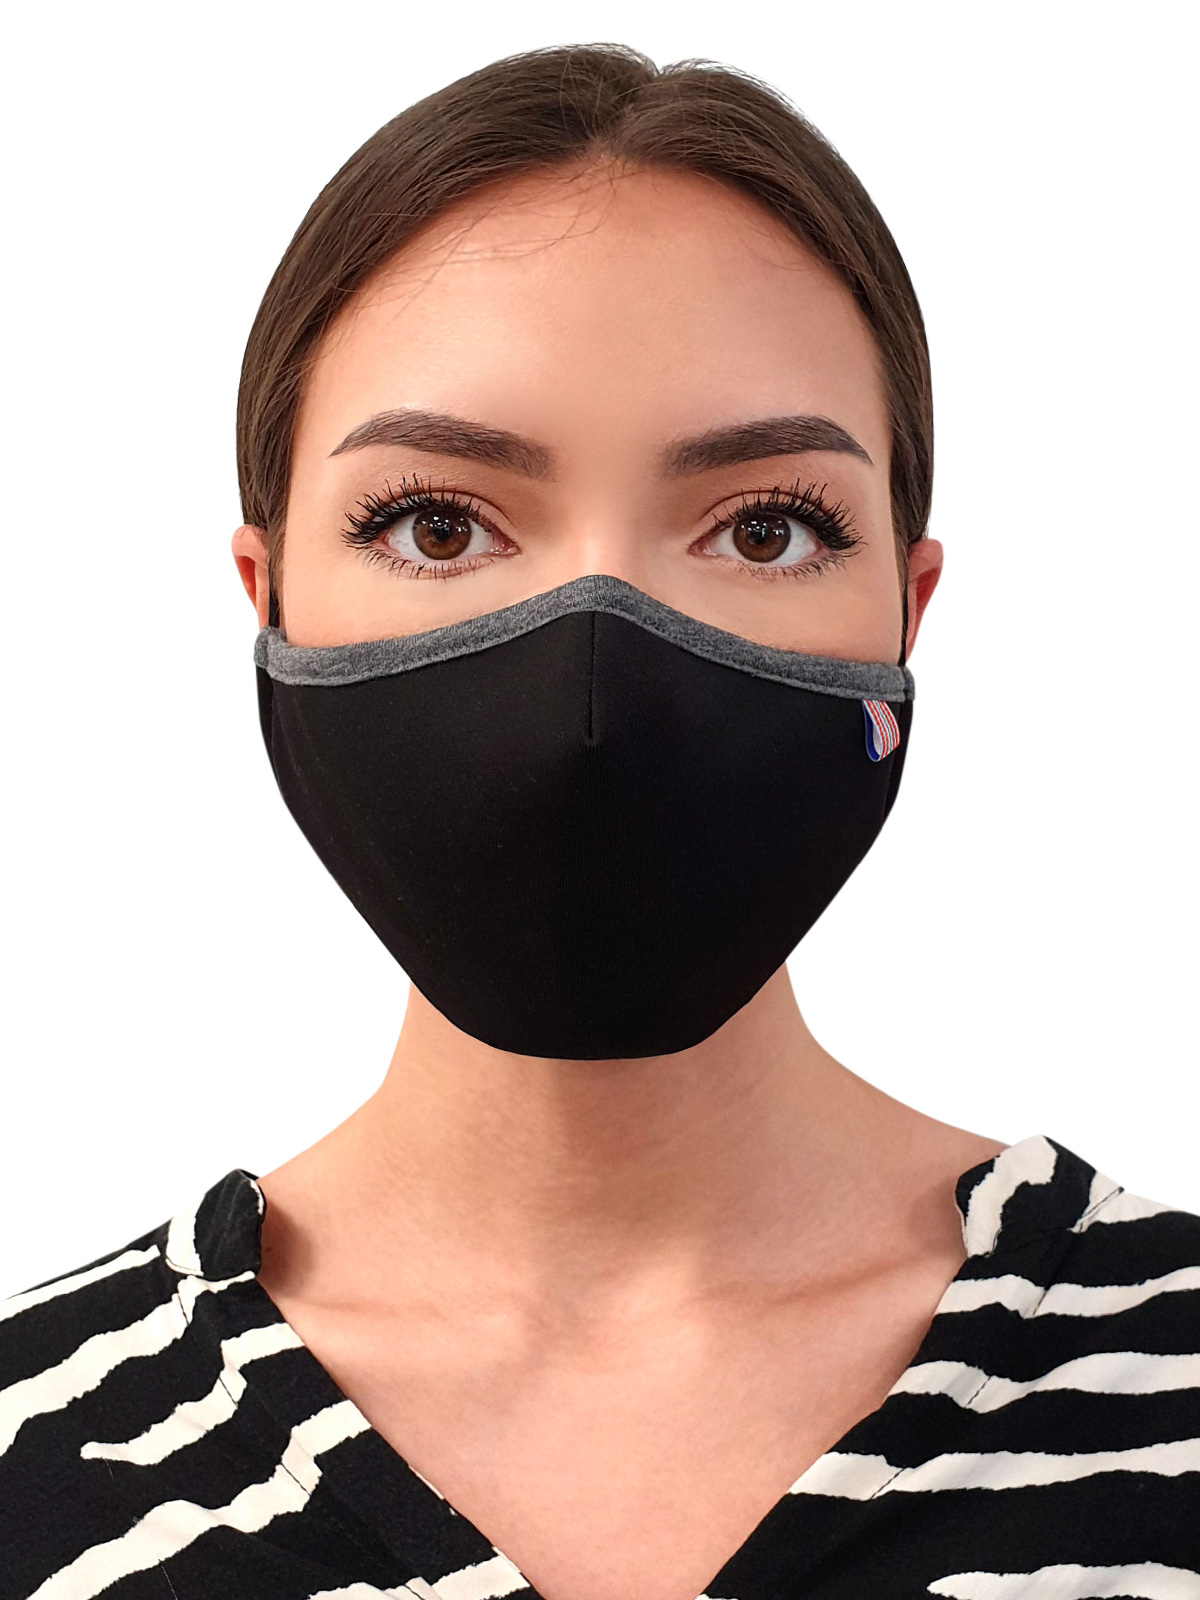  επαναχρησιμοποιήσιμη μάσκα μαύρη  - 10682 - € 2.76 img2